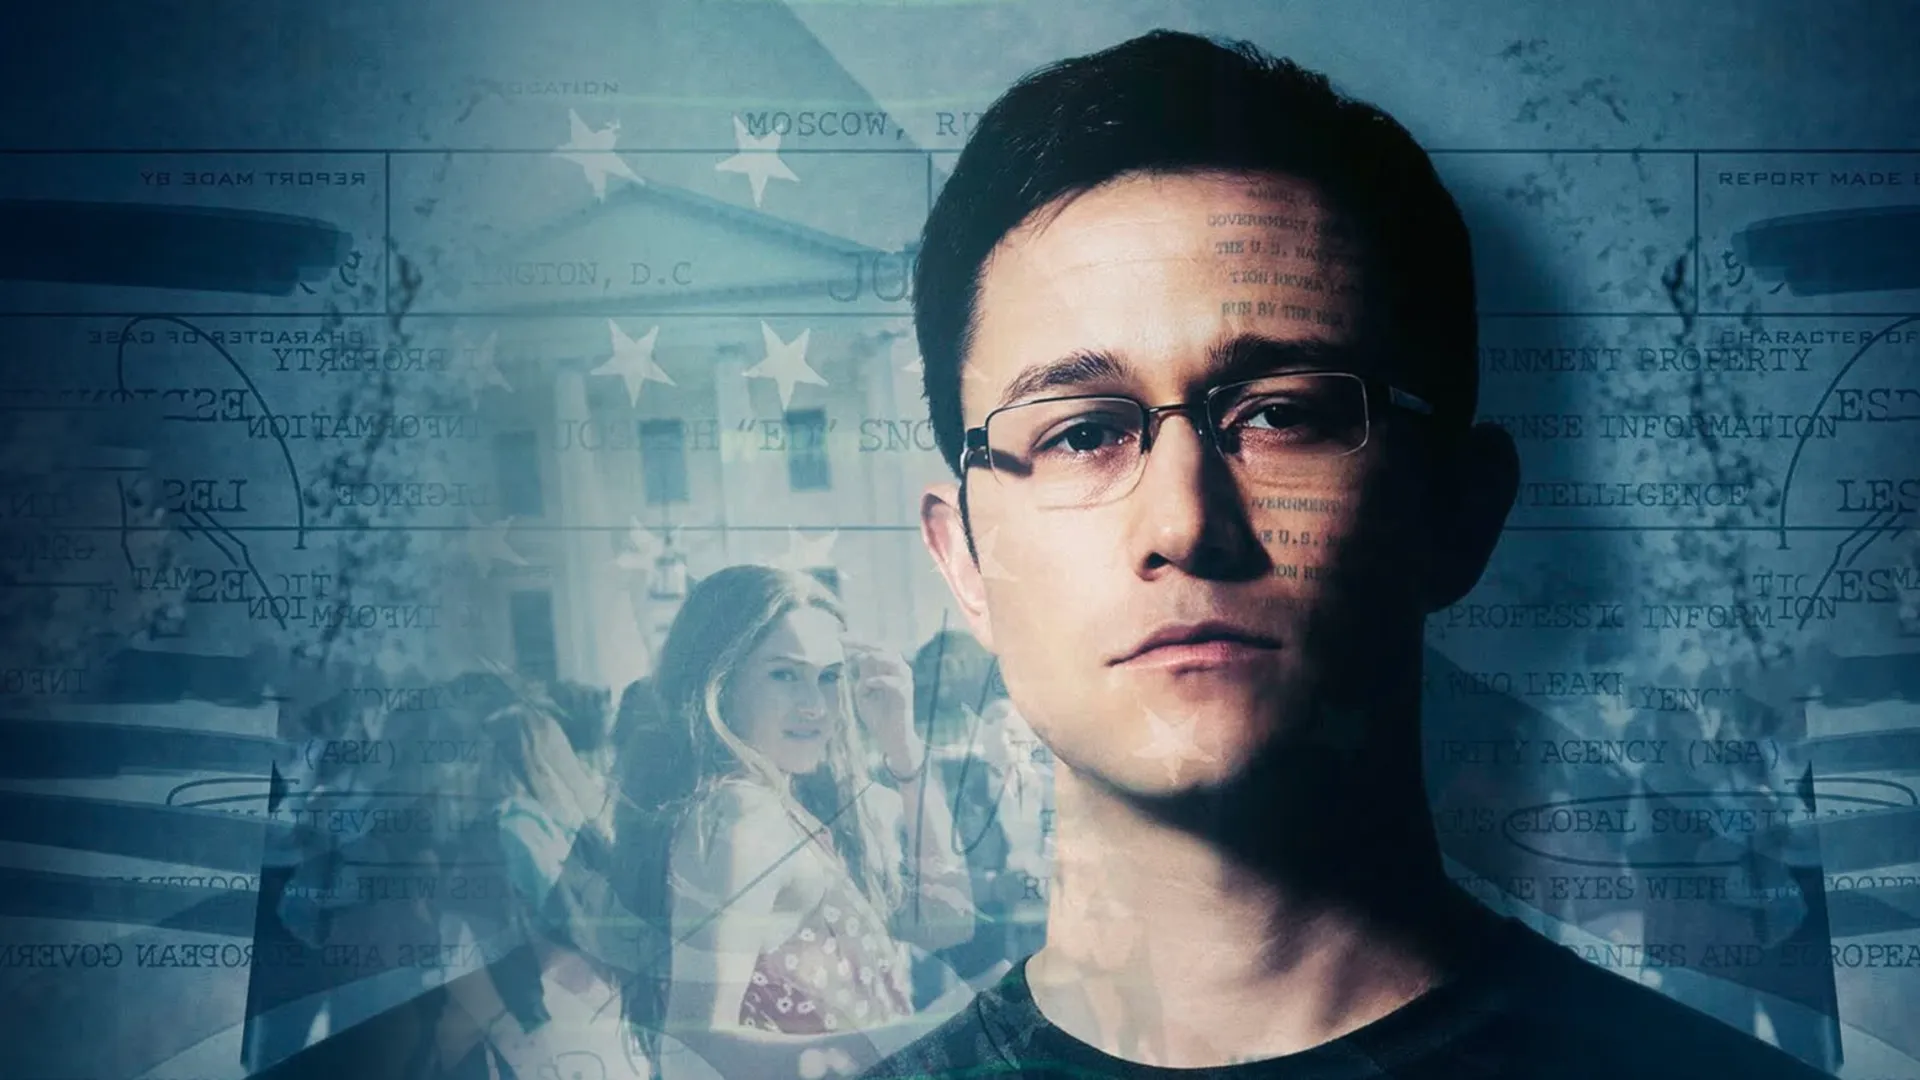 Mật Vụ Snowden